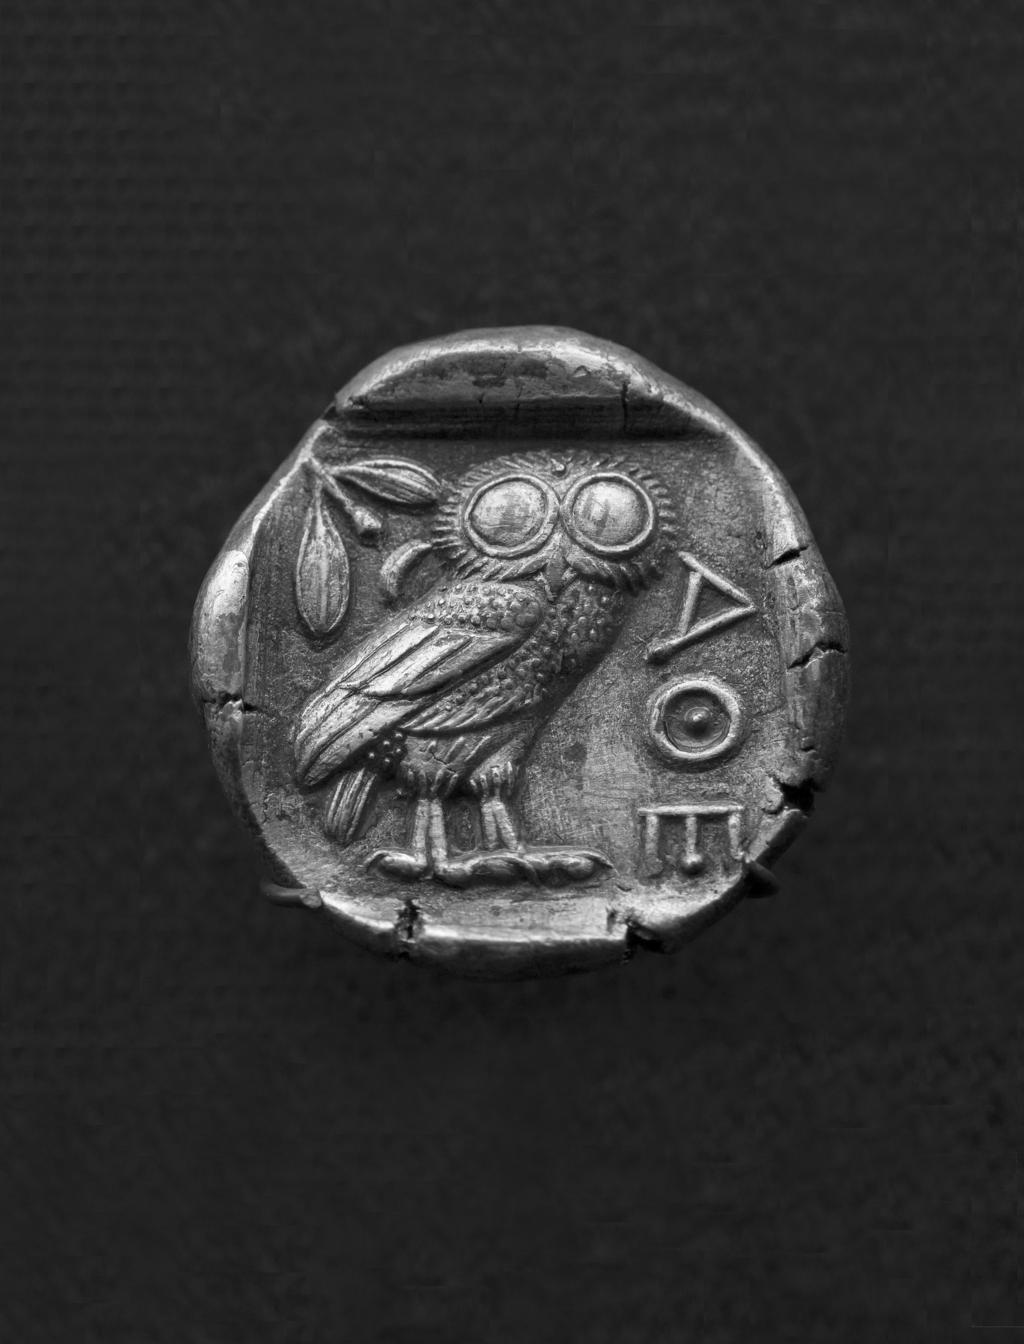 ה ינשוף של אתנה על מטבע אתונאי שערכו ארבע דרכמות, המאה